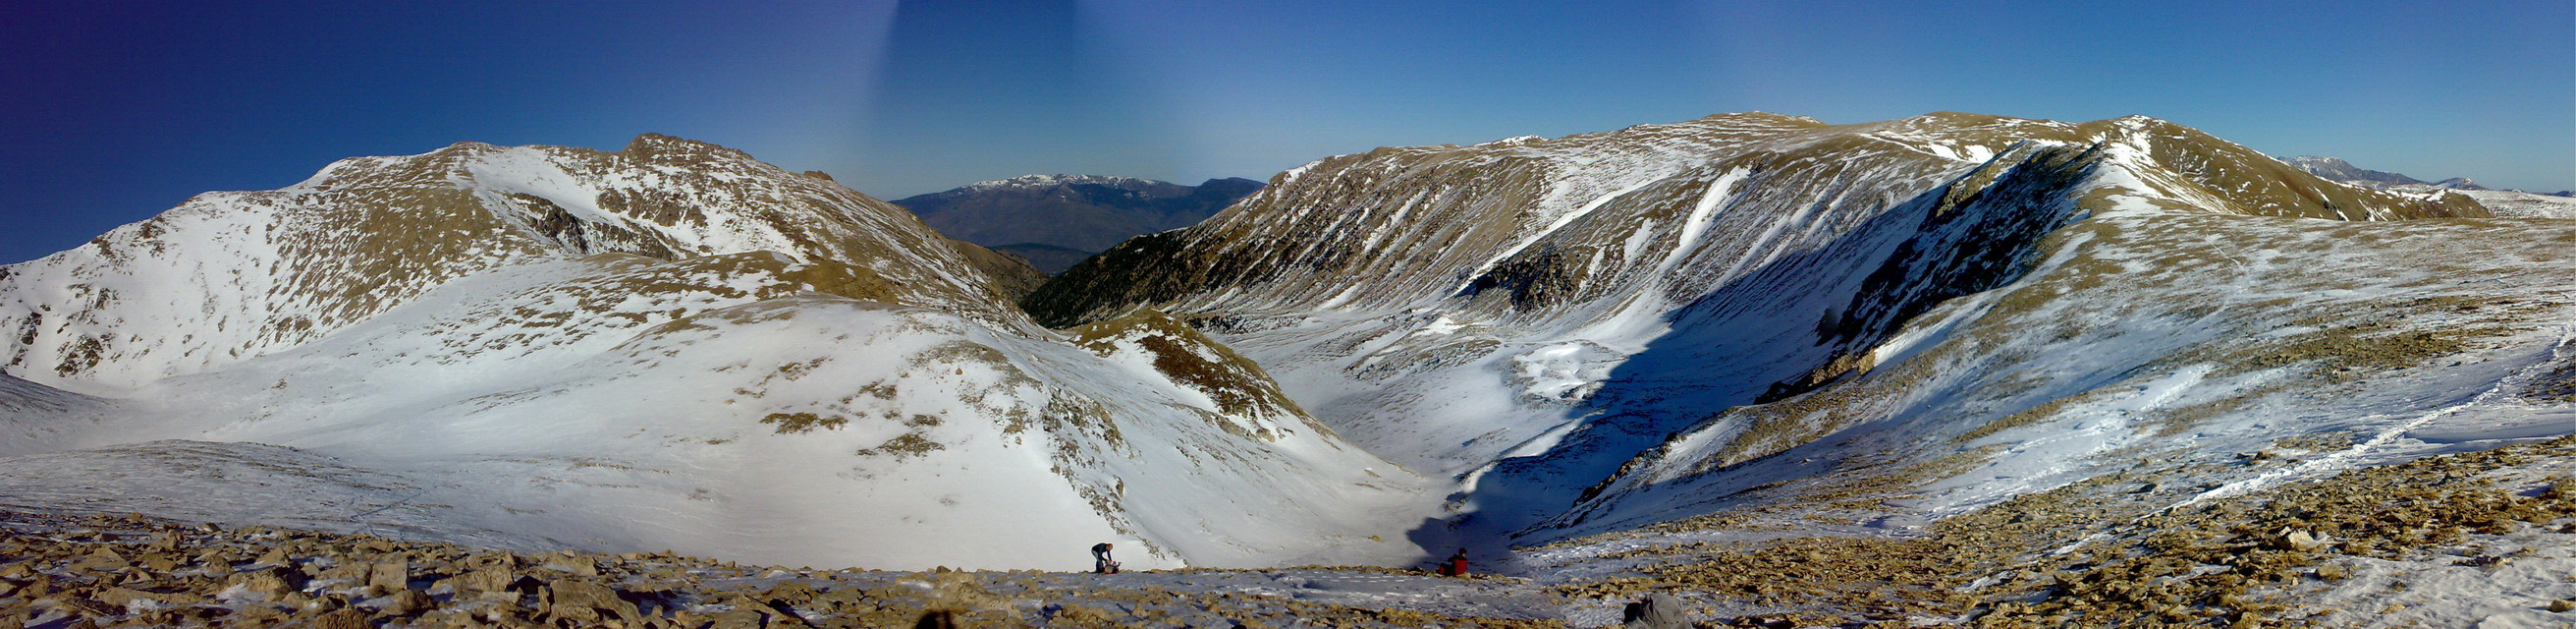 Pic de Bacivers (2845 m) i Serra Gallinera